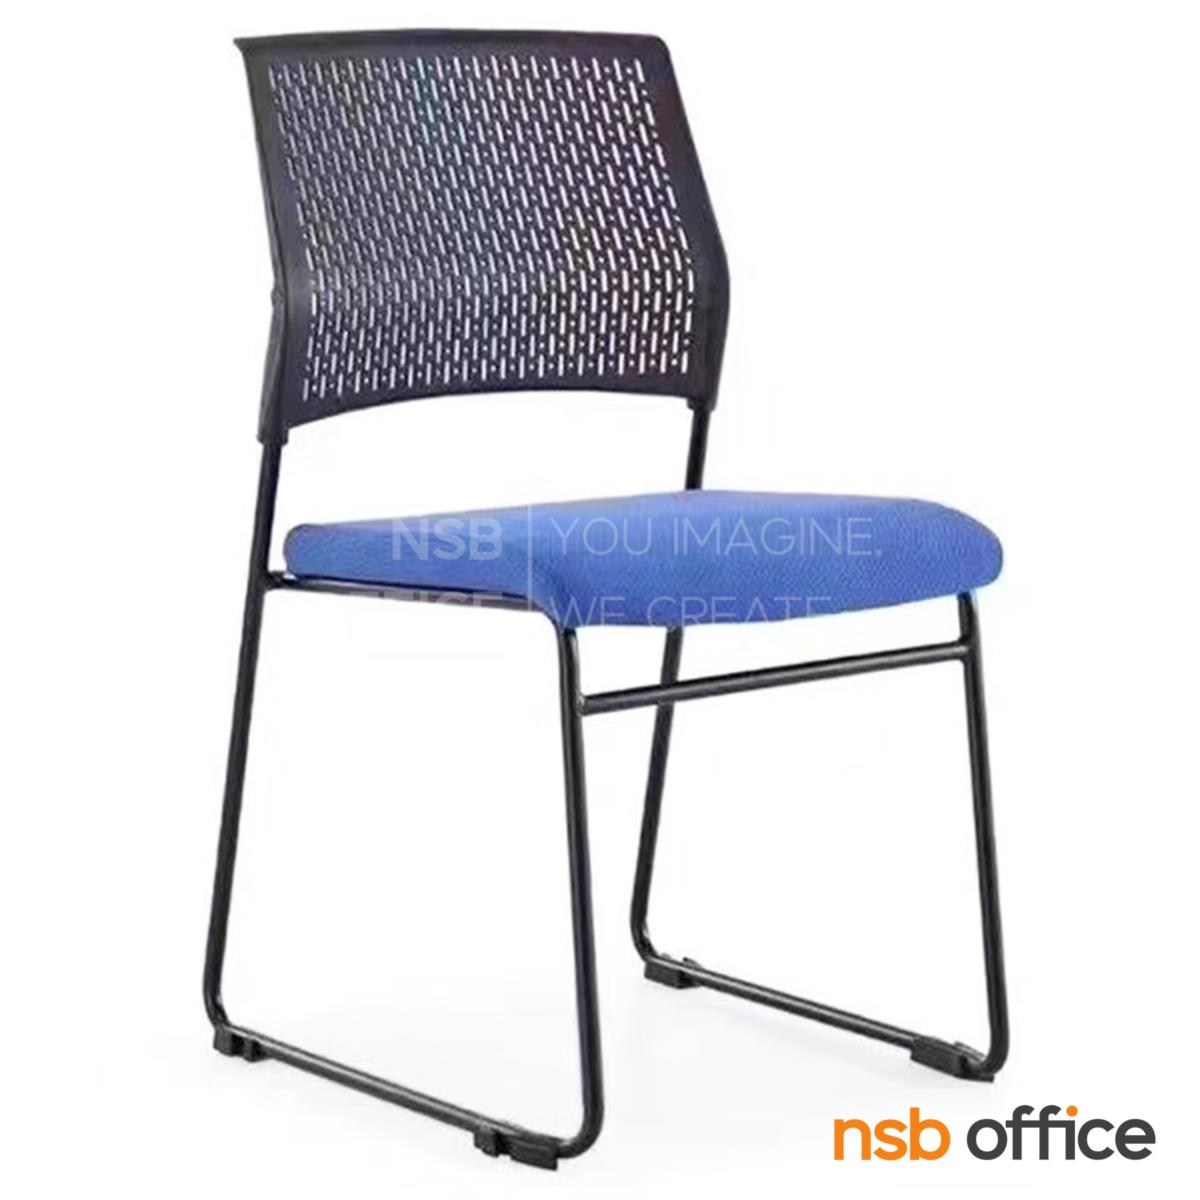 B04A220:เก้าอี้อเนกประสงค์เฟรมโพลี่ รุ่น Neytiri (เนทิรี่)  ขาเหล็ก